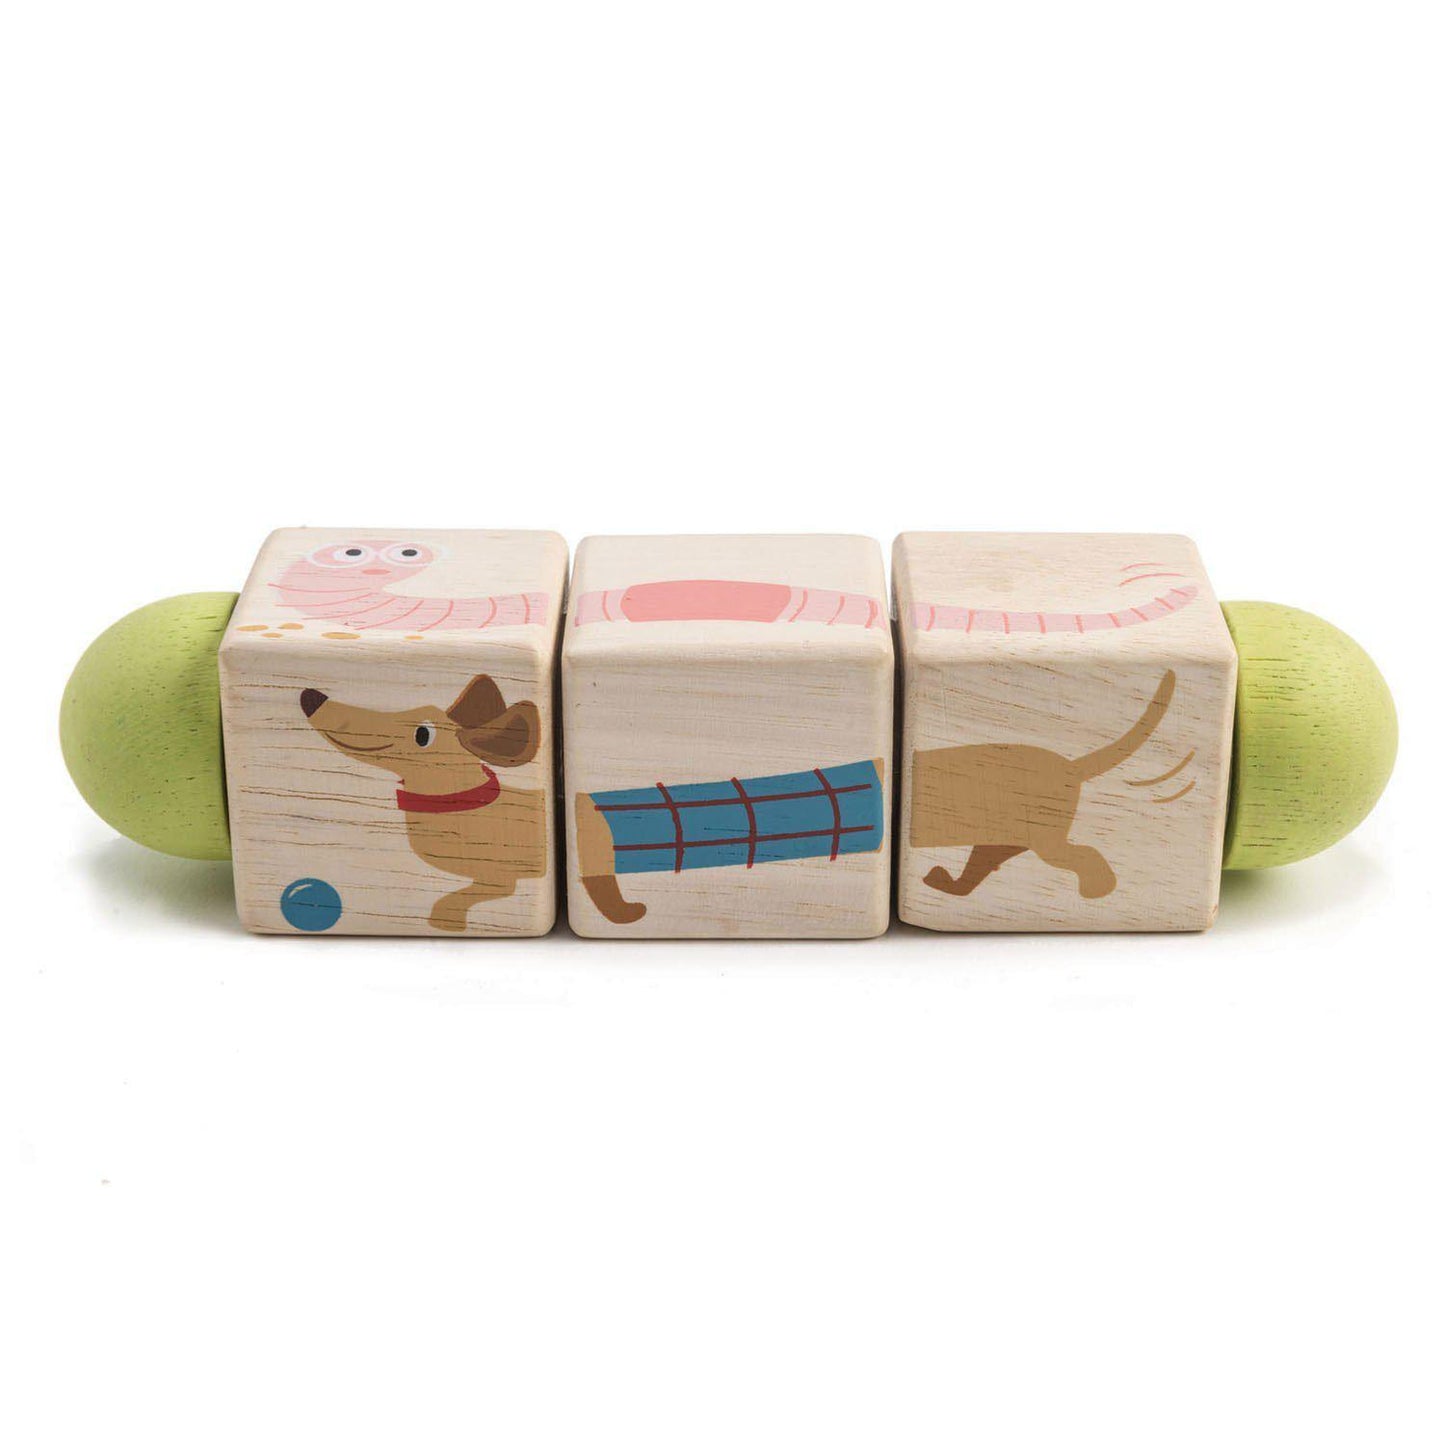 Forgó állatos kockák, prémium minőségű fából - Twisting Cubes - Tender Leaf Toys-Tender Leaf Toys-3-Játszma.ro - A maradandó élmények boltja